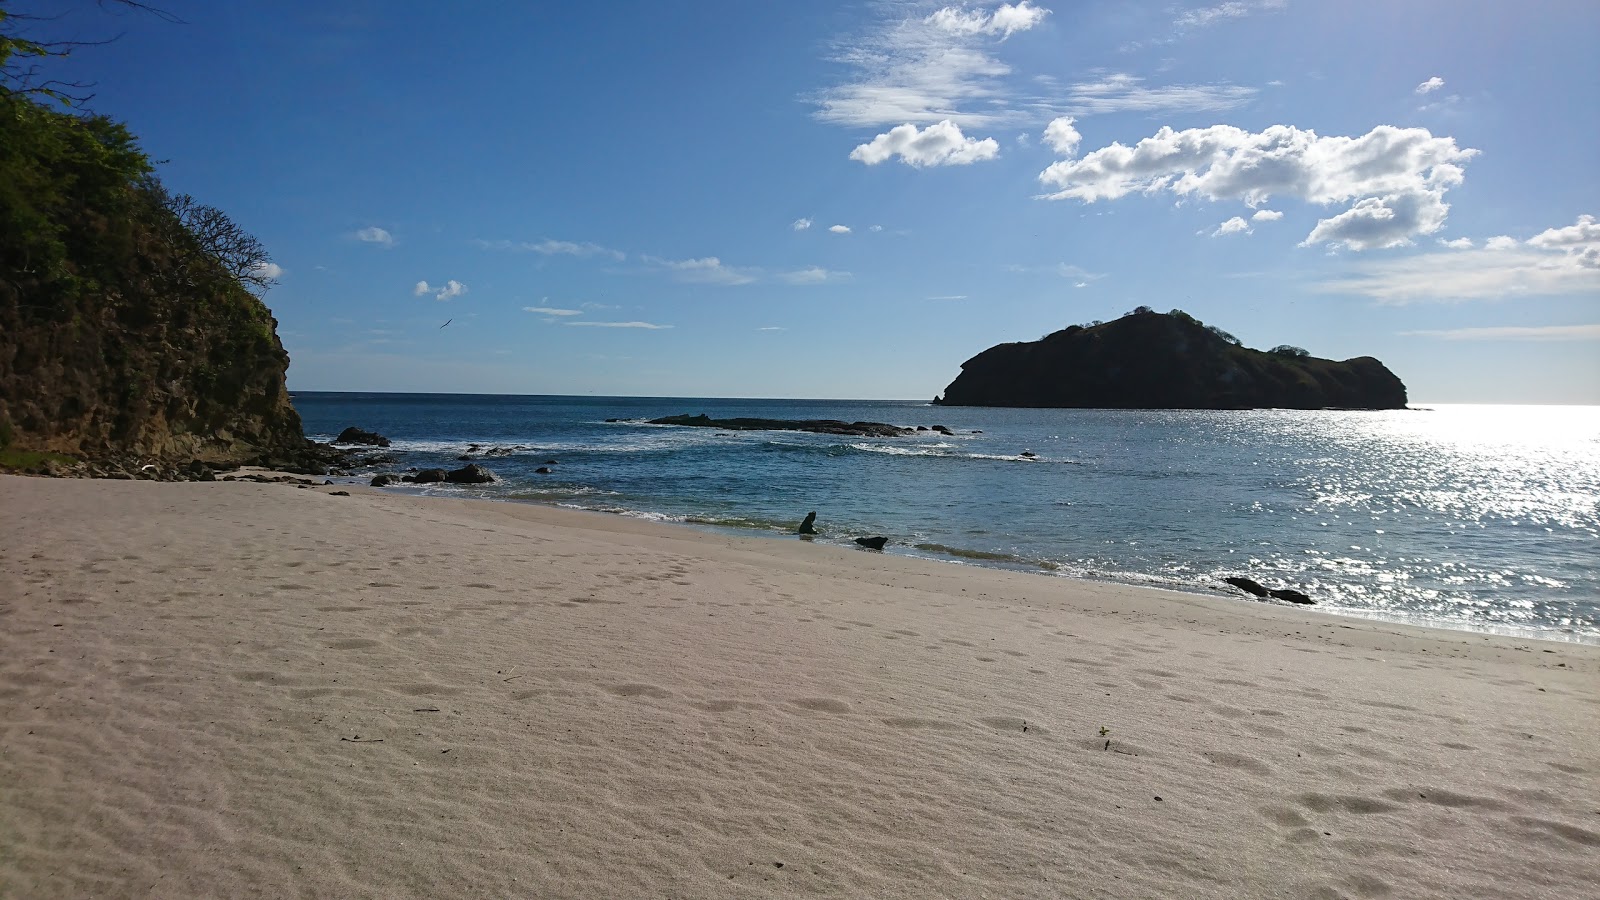 Guacalito Plajı'in fotoğrafı parlak kum yüzey ile